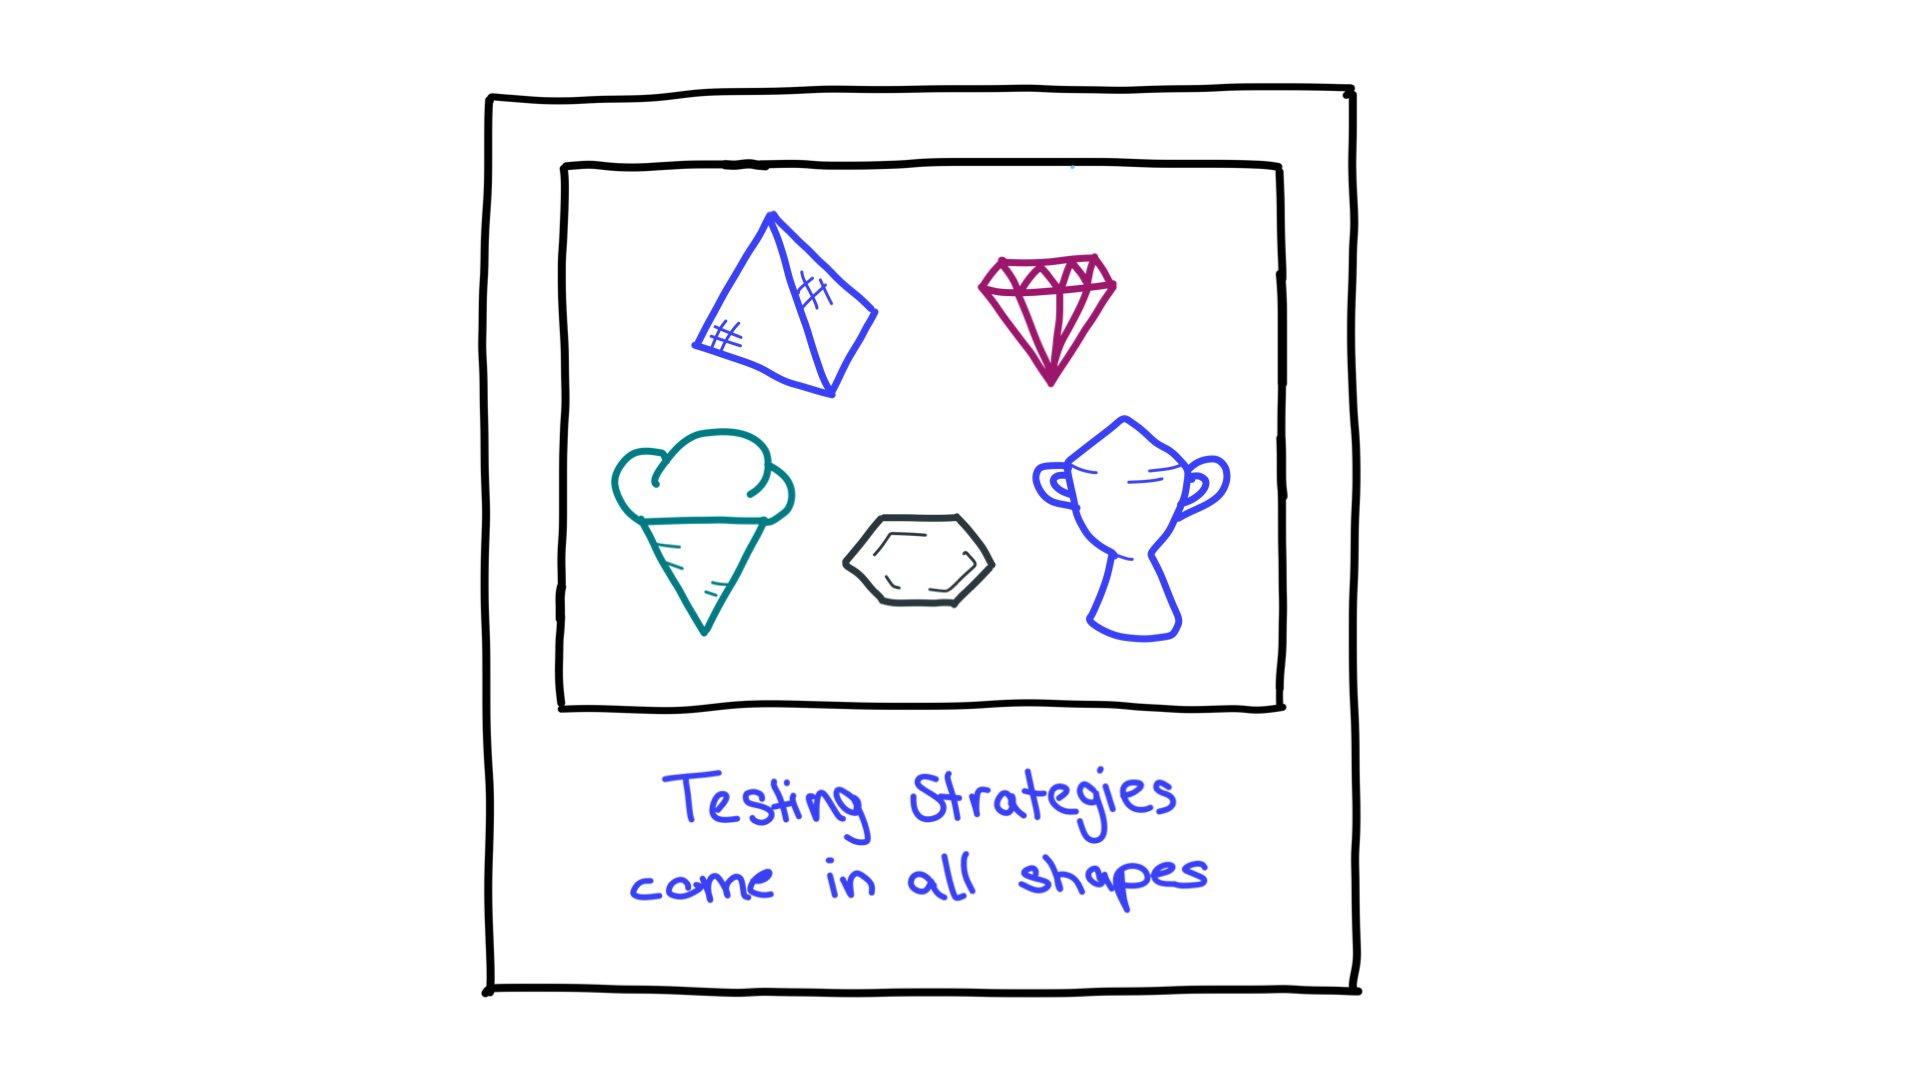 Beispiele für Teststrategieformen: eine Pyramide, eine geschliffene Raute, eine Eistüte, ein Sechseck und eine Trophäe.